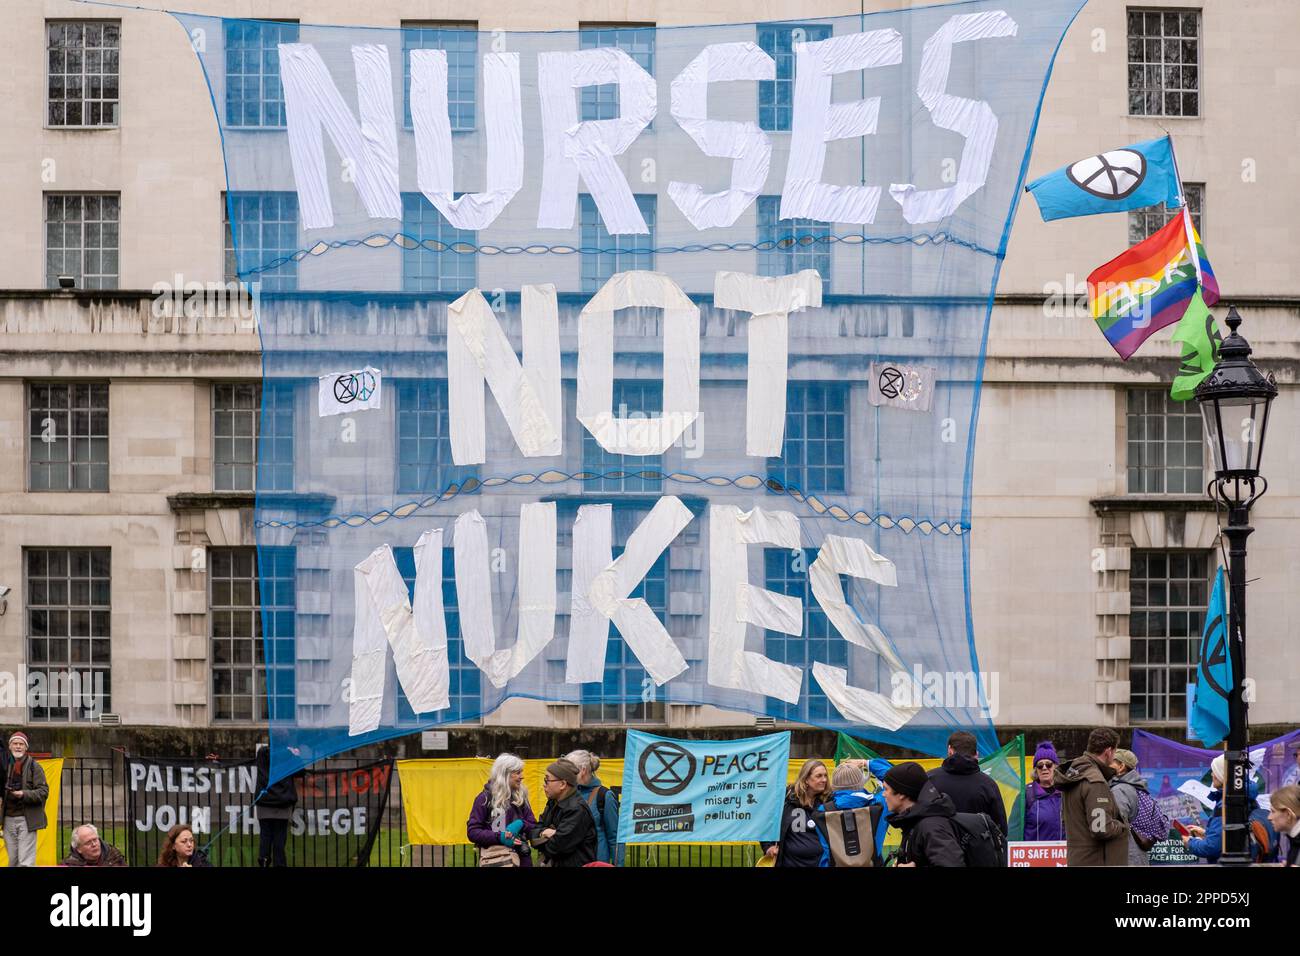 Grande bannière de protestation « Nurses Not Nukes » à l'extérieur du bâtiment du ministère de la Défense à Whitehall, Londres. Les peuples piquetage à l'extérieur du MOD, extinction rébellion. Banque D'Images